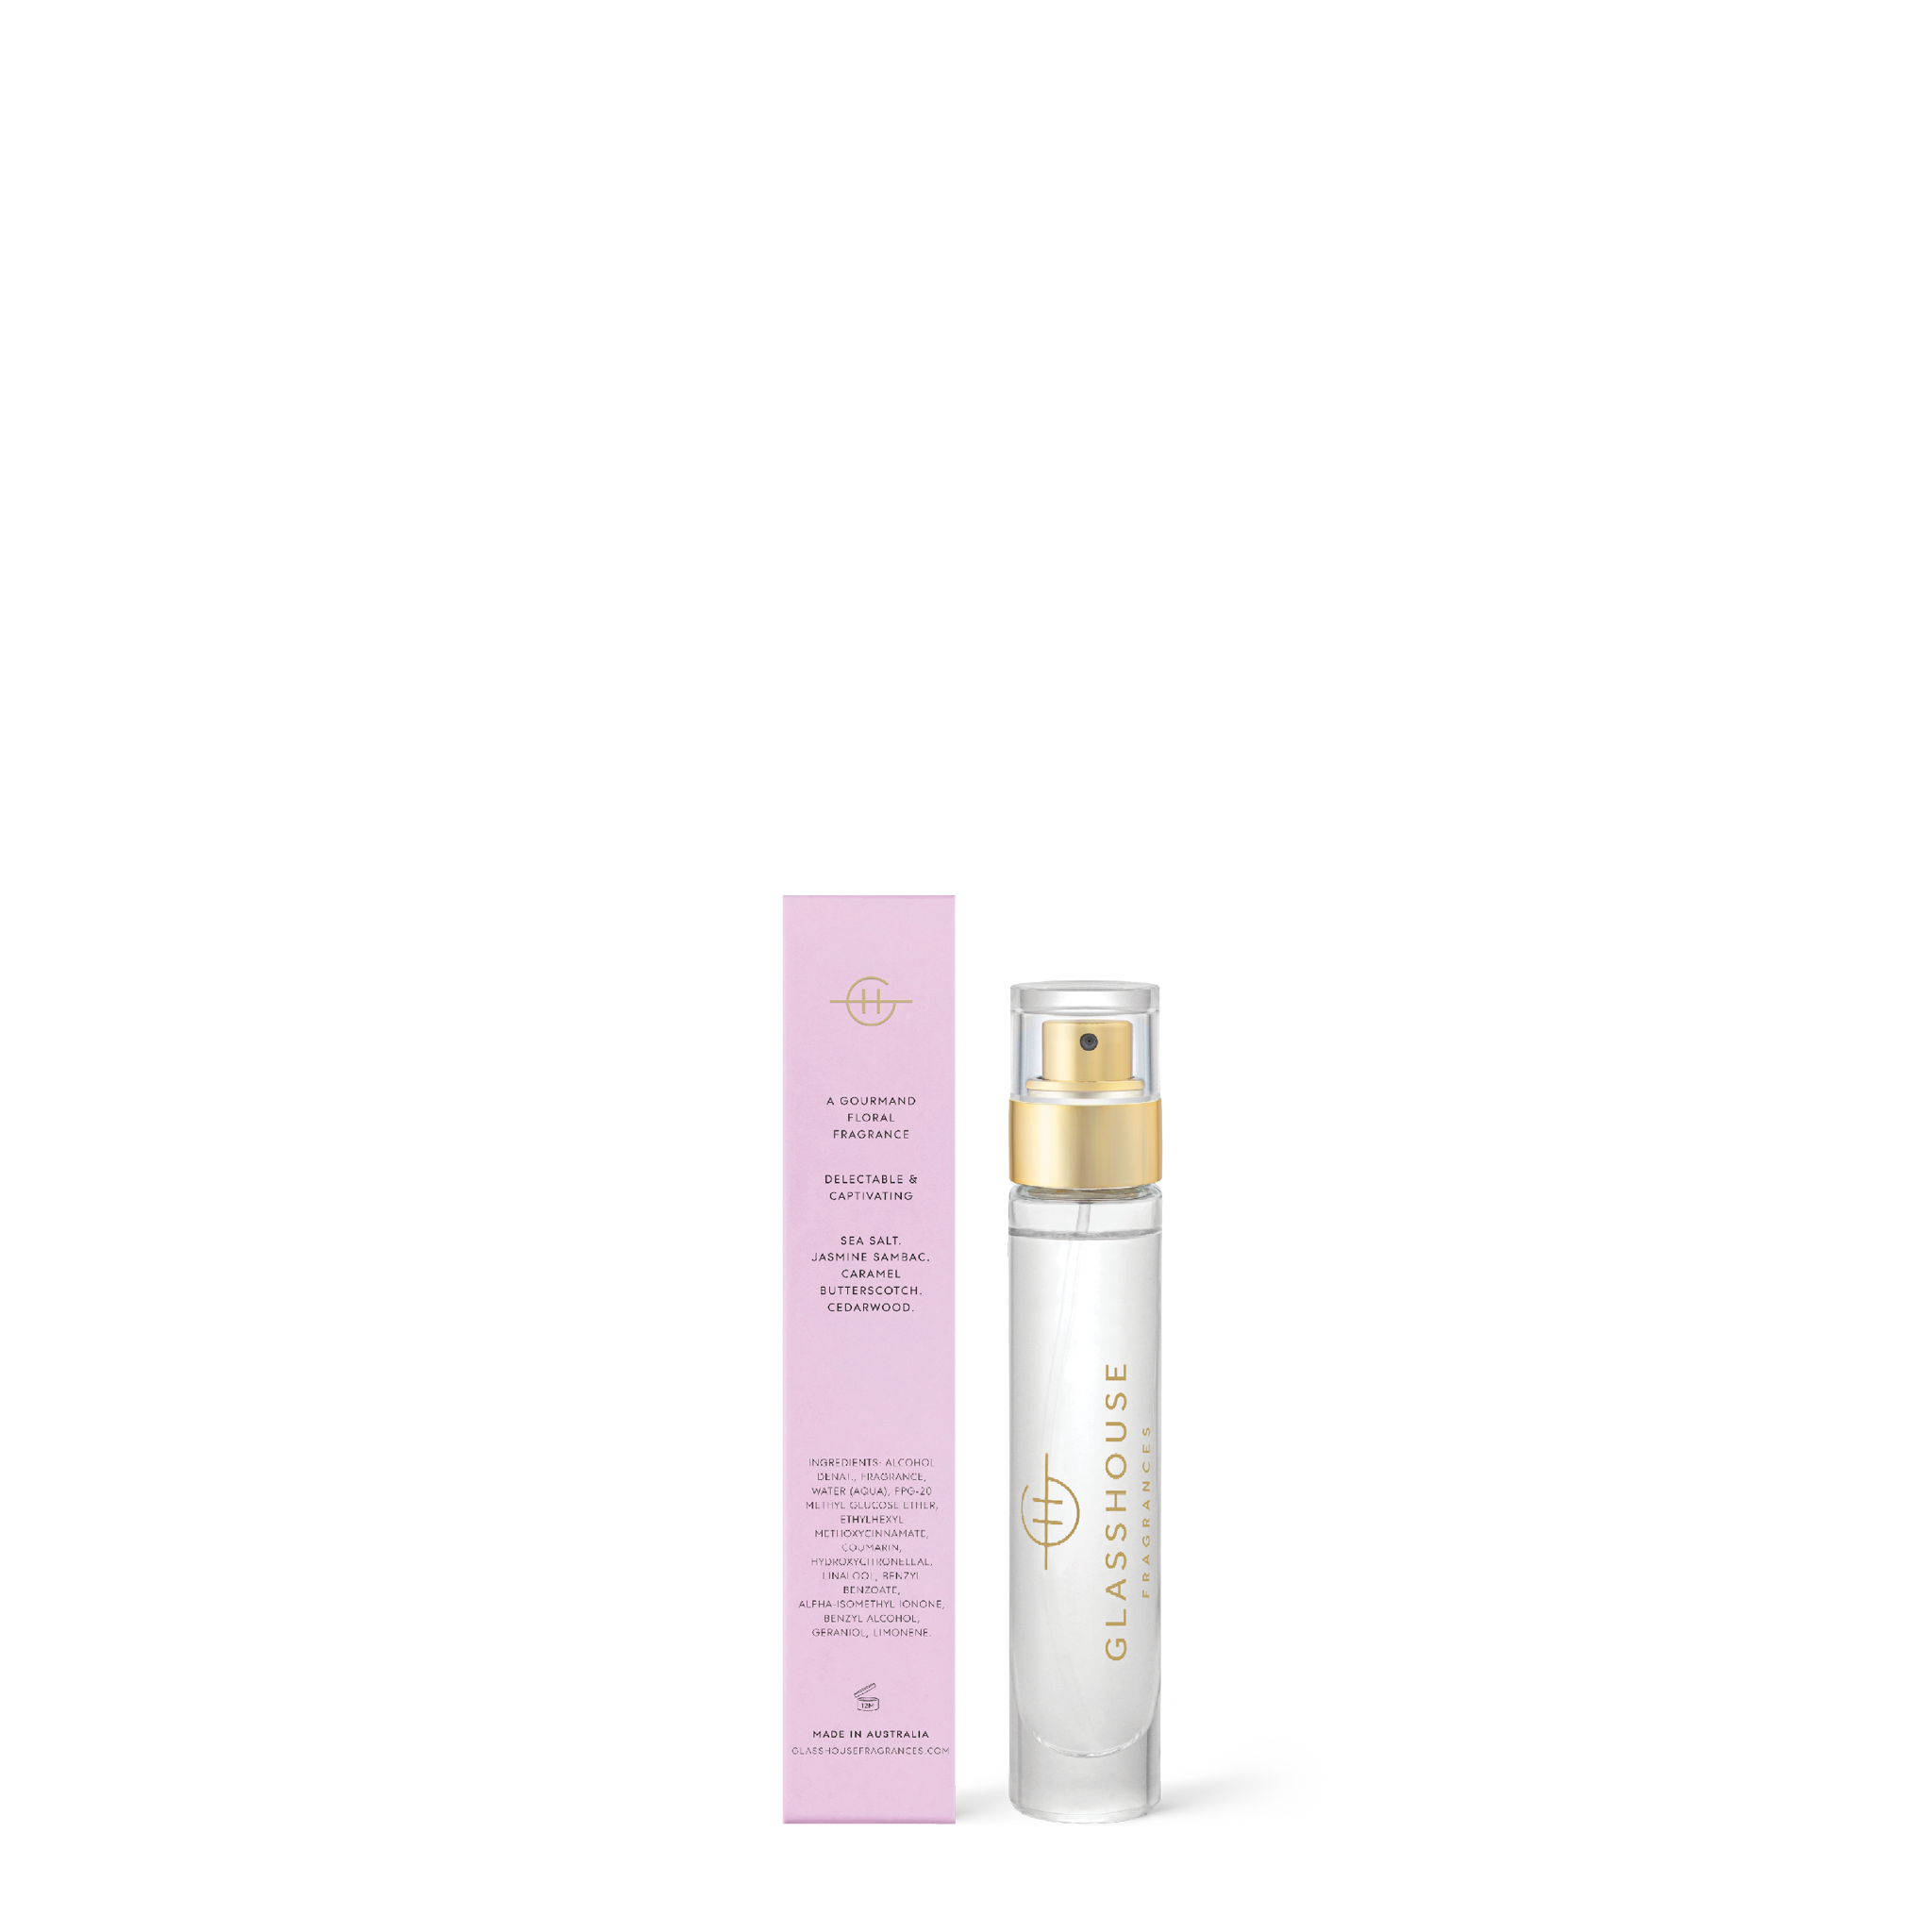 Glasshouse Fragrances A Tahaa Affair Vanilla Caramel 14mL Eau de Parfum Spray with box - Back of product shot